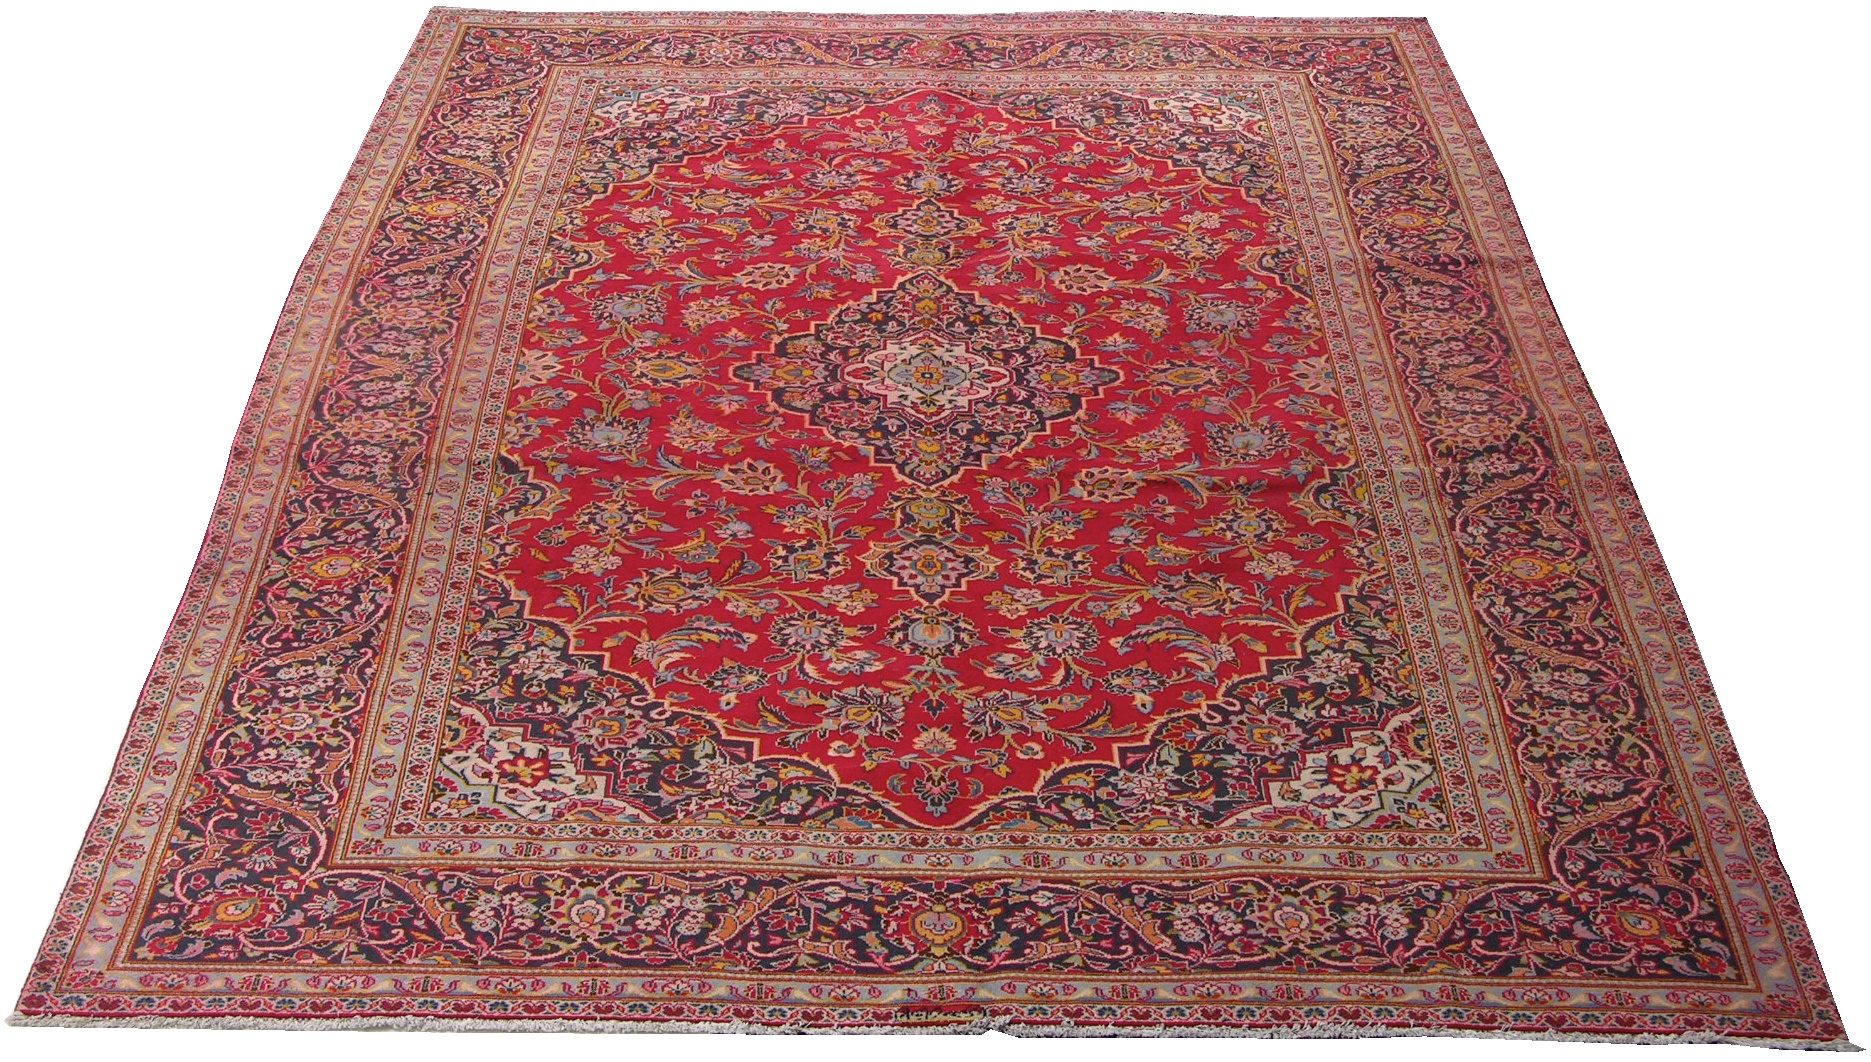 A Kashan Carpet, 09.22.07, Sold: $345